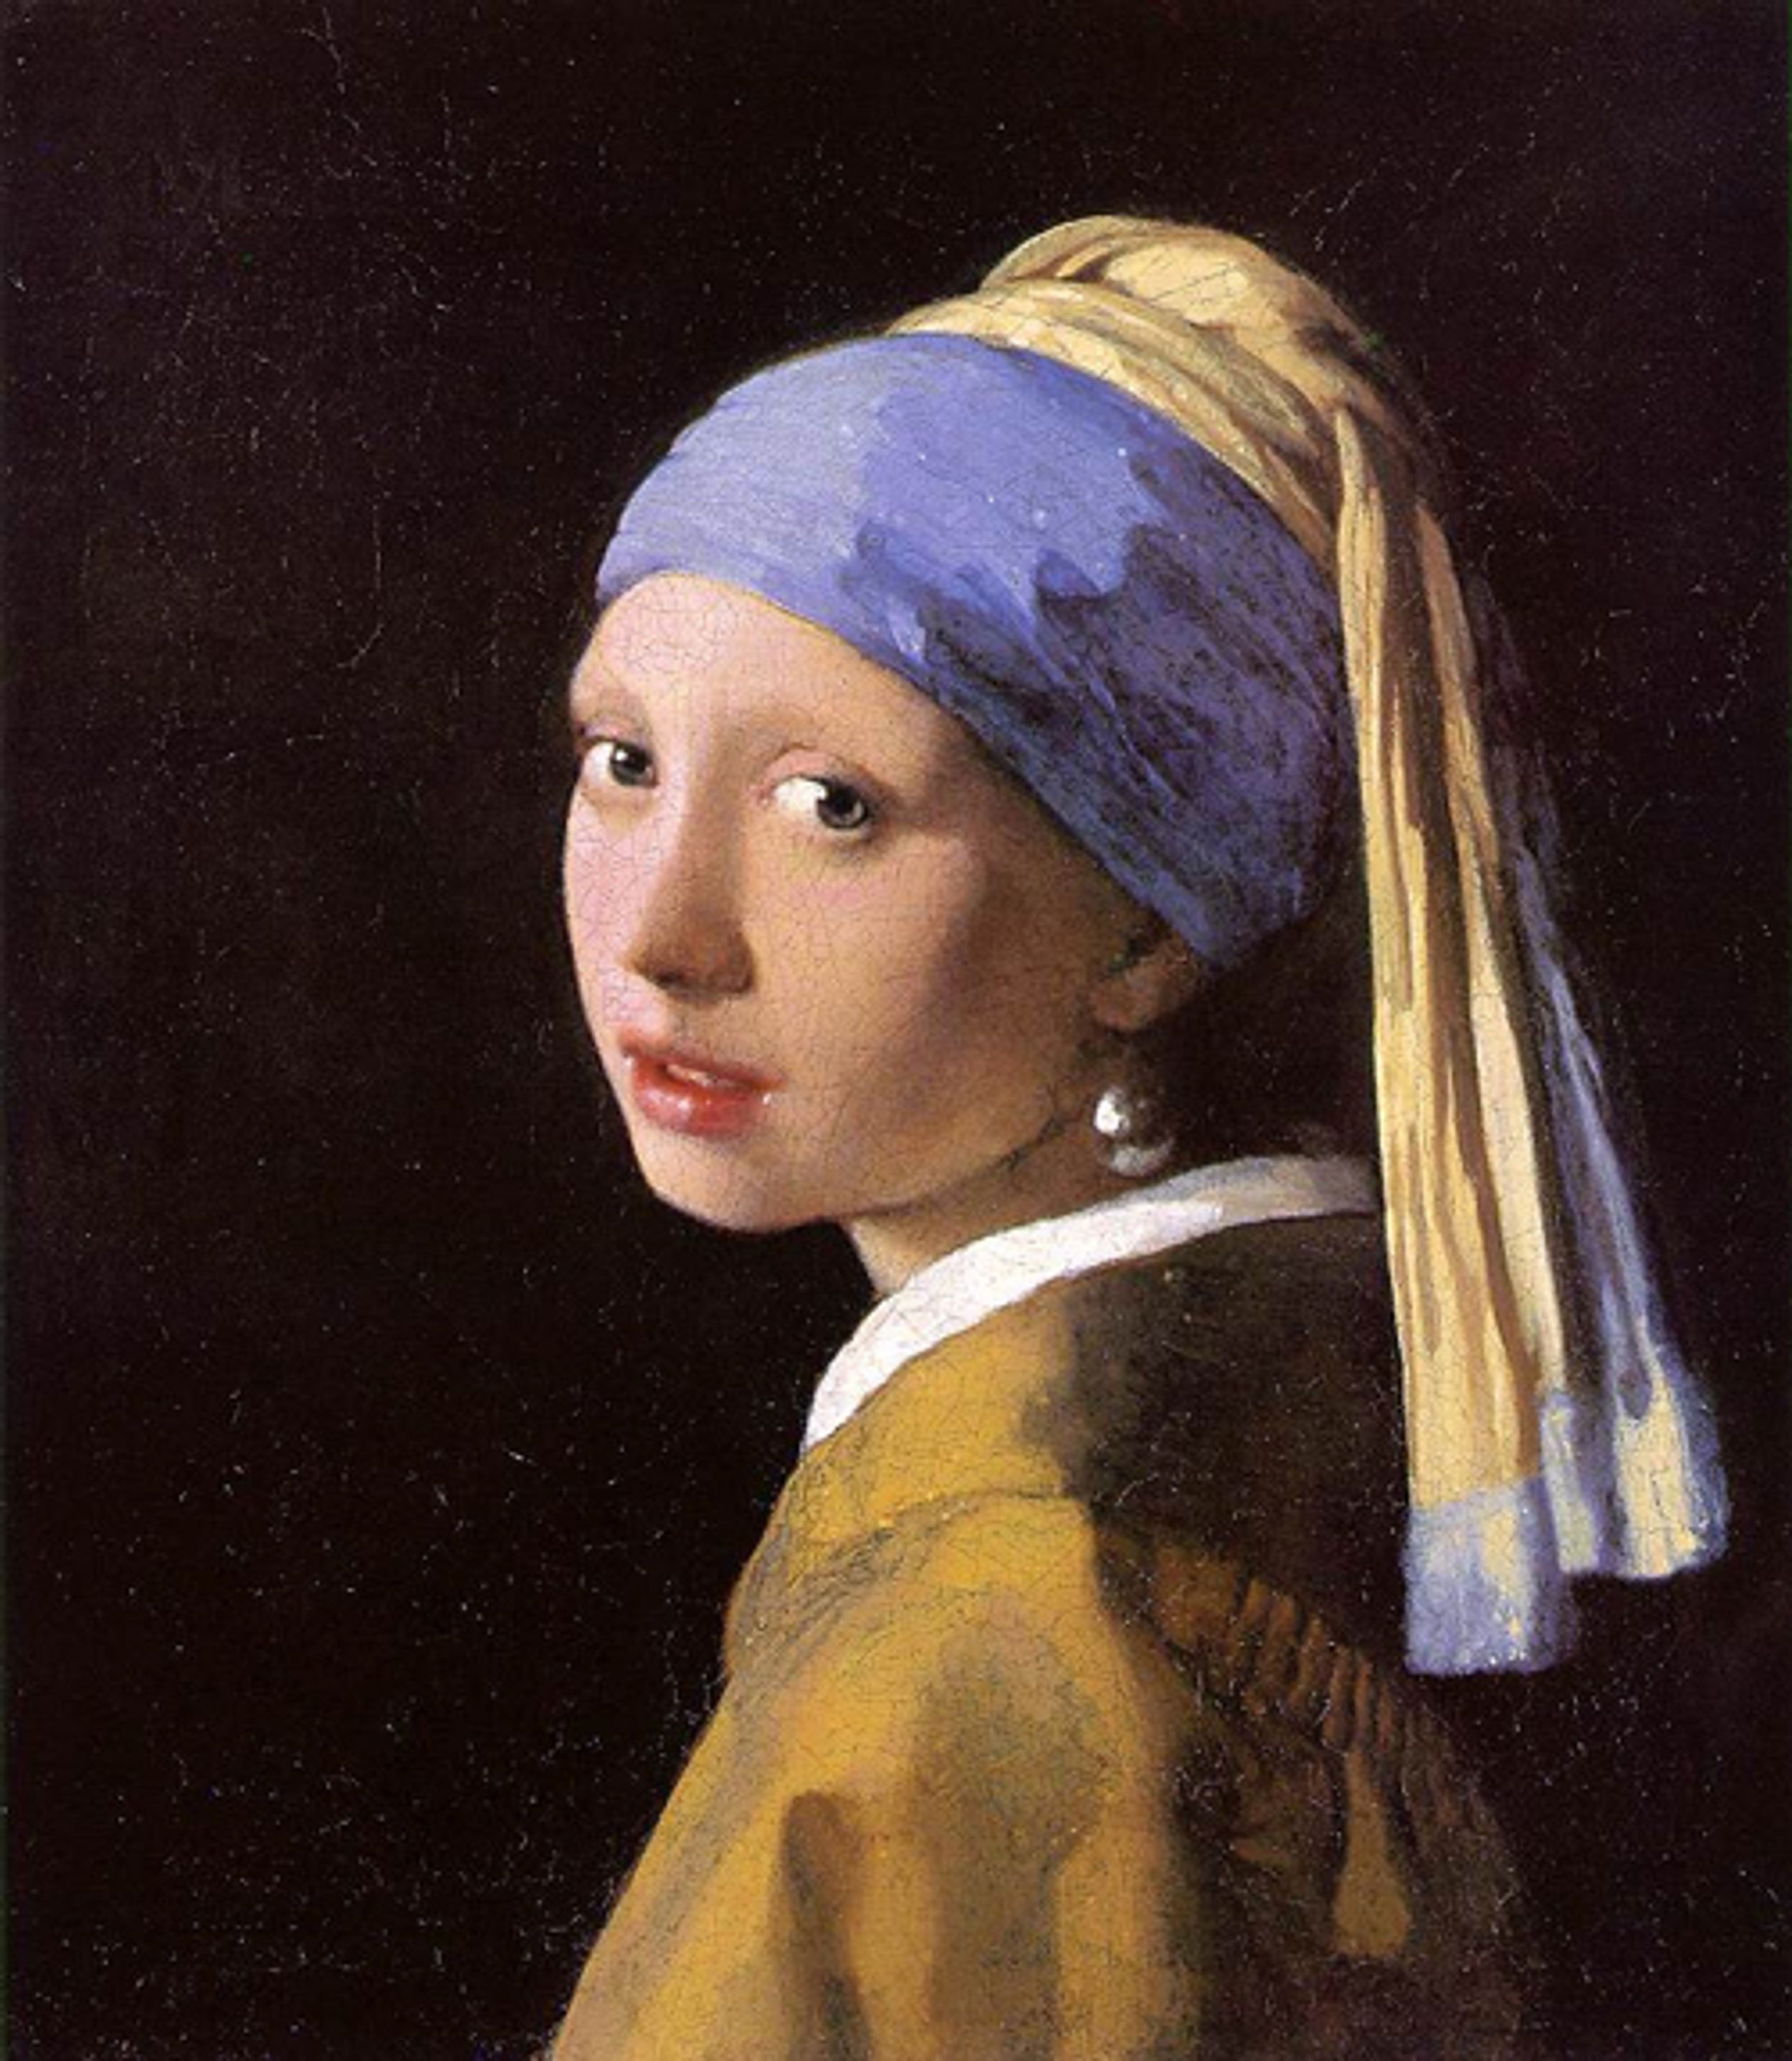 Views on Vermeer